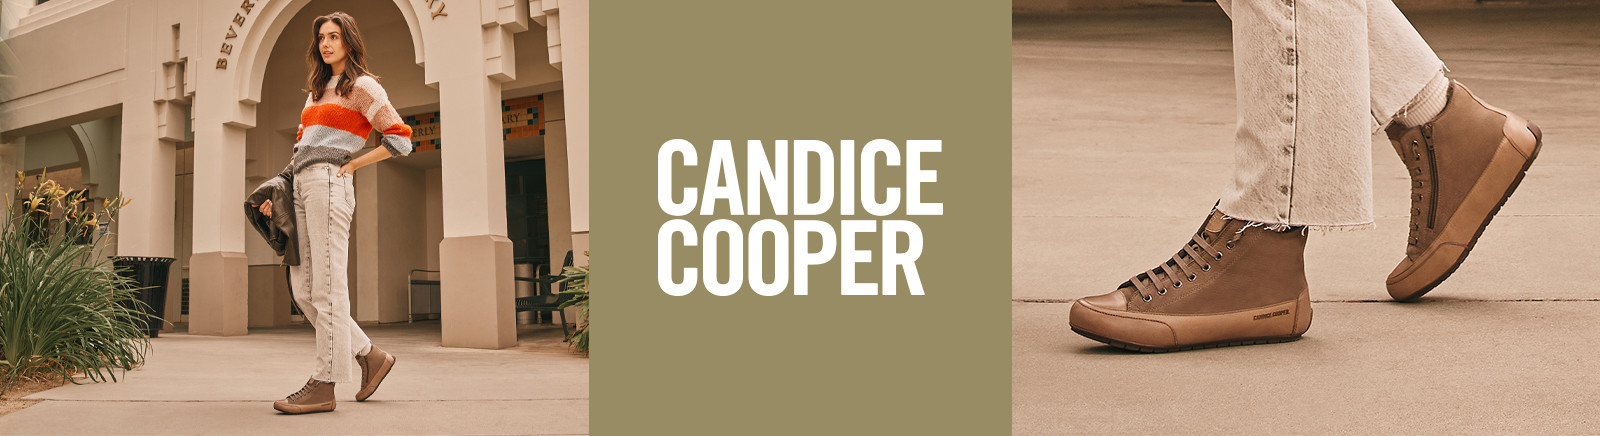 Prange: Candice Cooper Winter Boots für Damen online shoppen